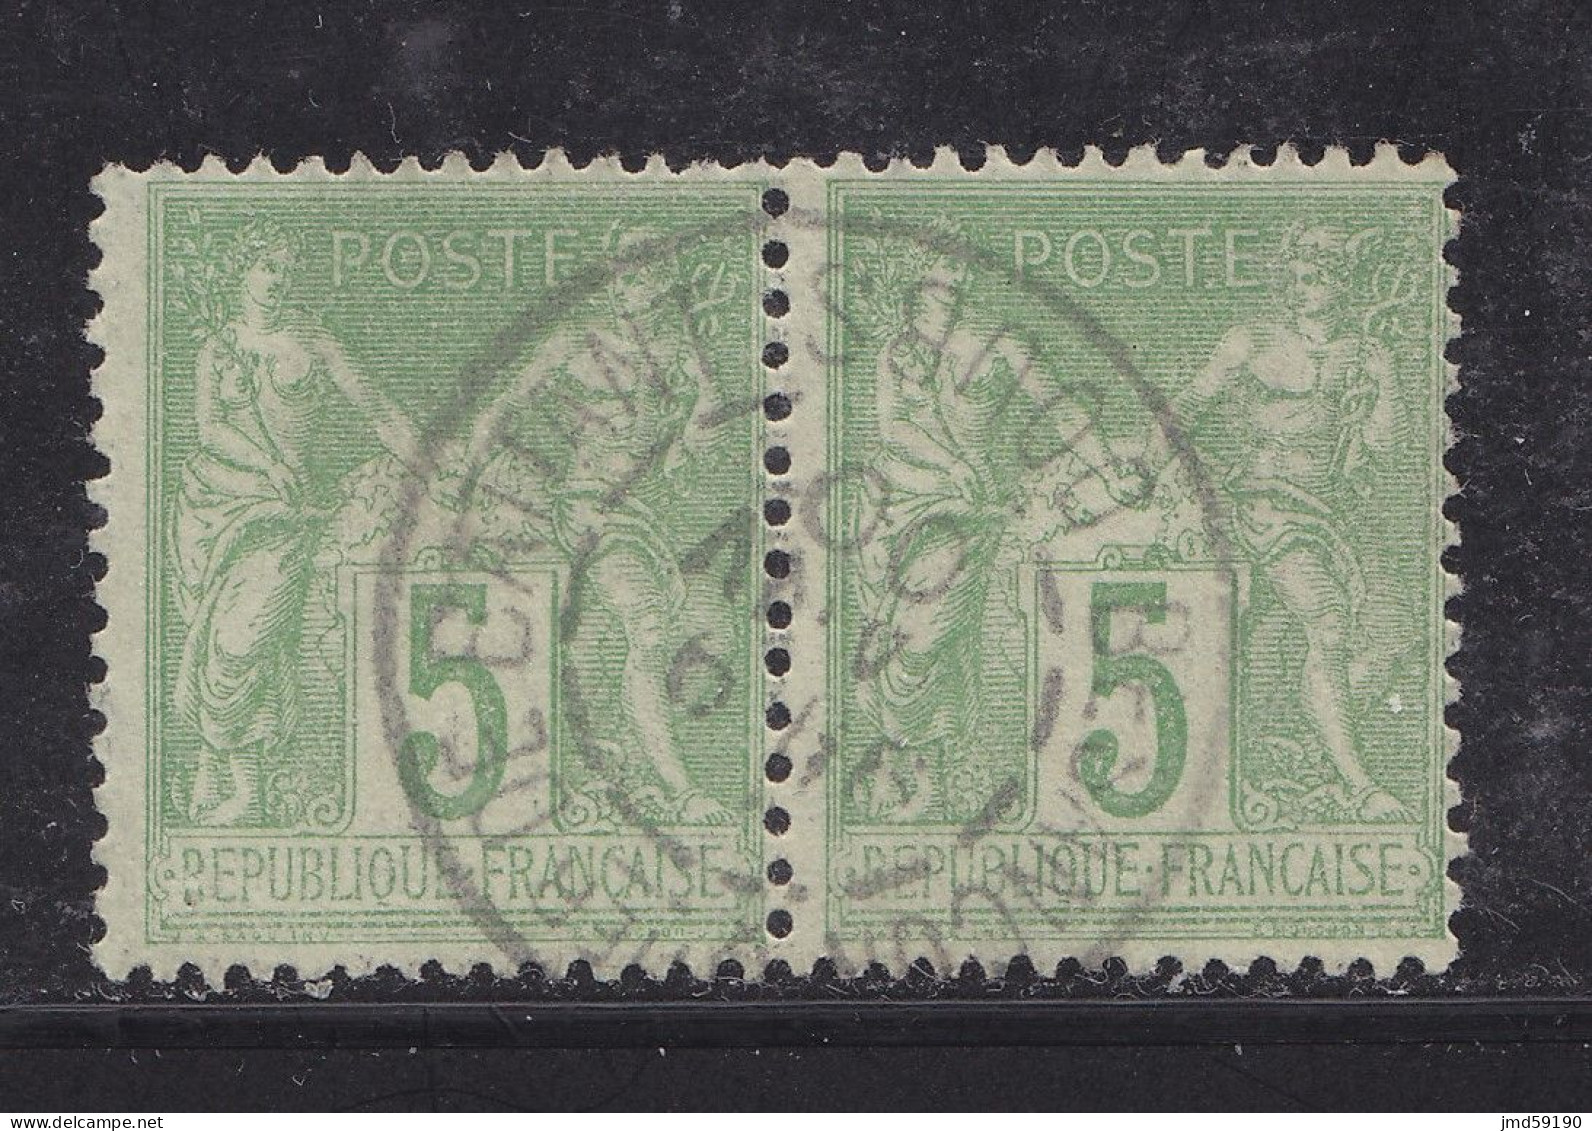 FRANCE Timbre Oblitéré N° 102 En Paire, Type Sage 5c Vert-jaune Type 1 - 1898-1900 Sage (Tipo III)